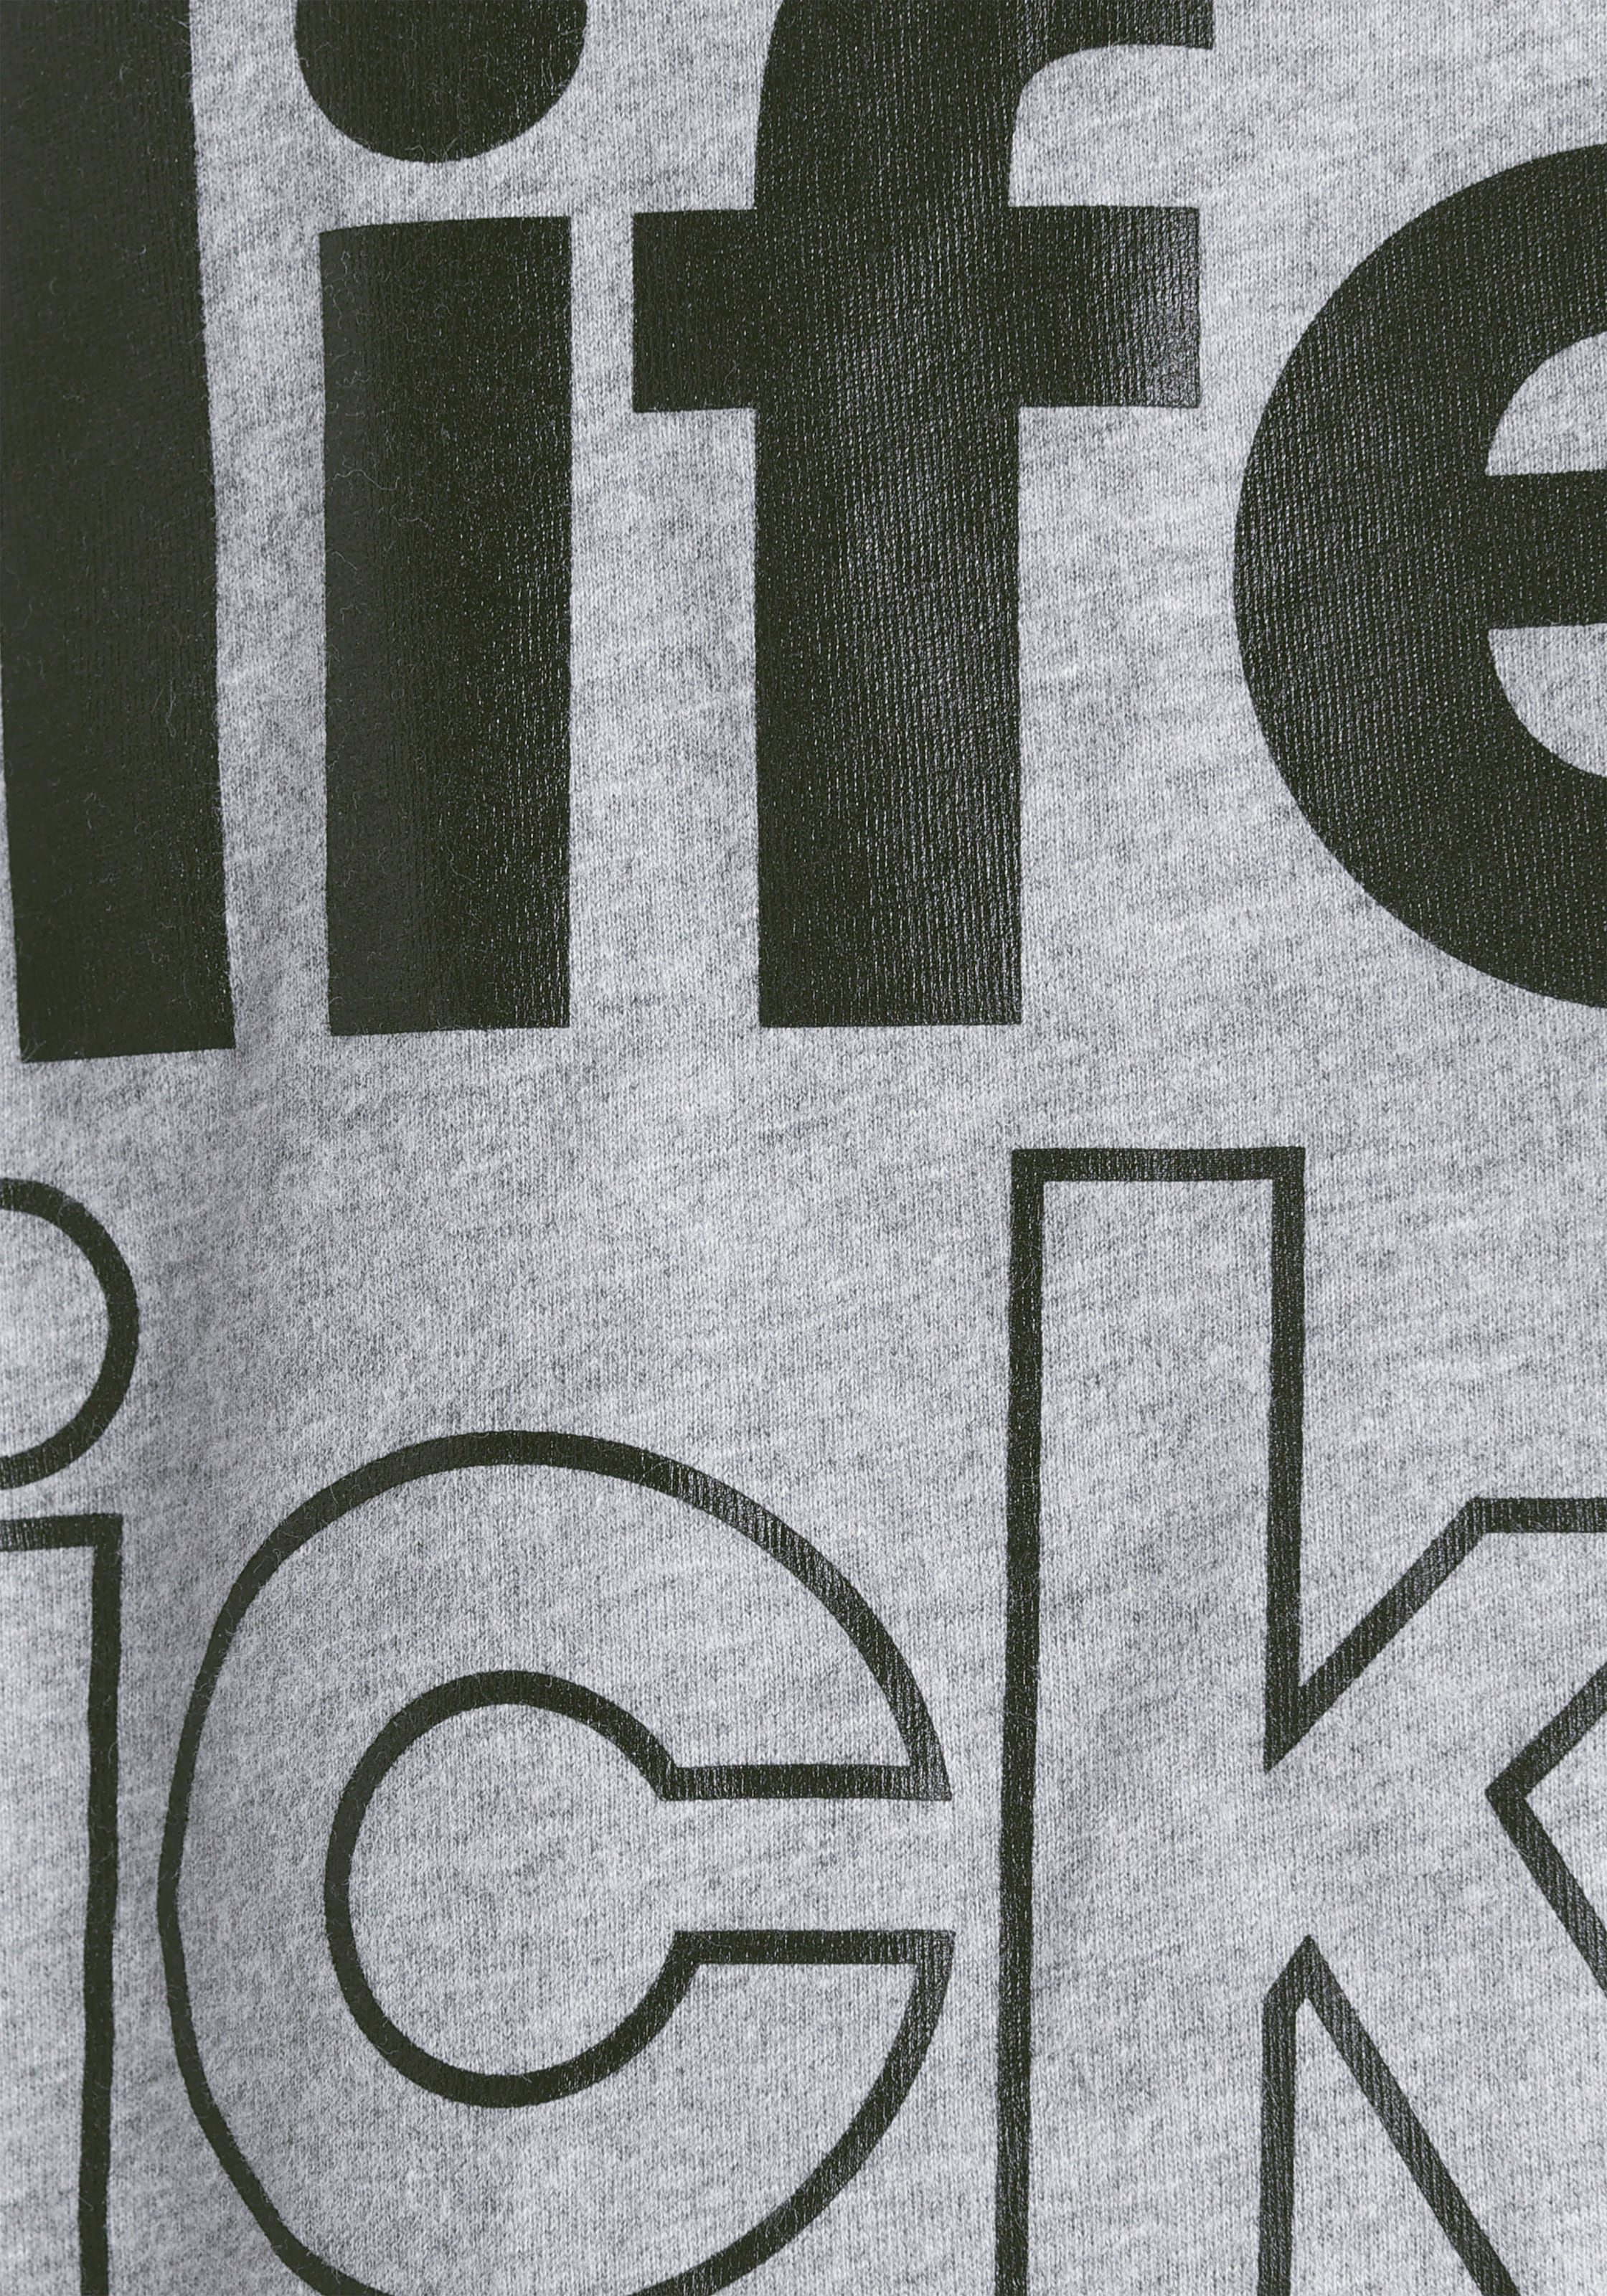 Alife & Kickin 3/4-Arm-Shirt »mit Logo Druck«, (2 tlg.), + Top - NEUE MARKE! Alife & Kickin für Kids.